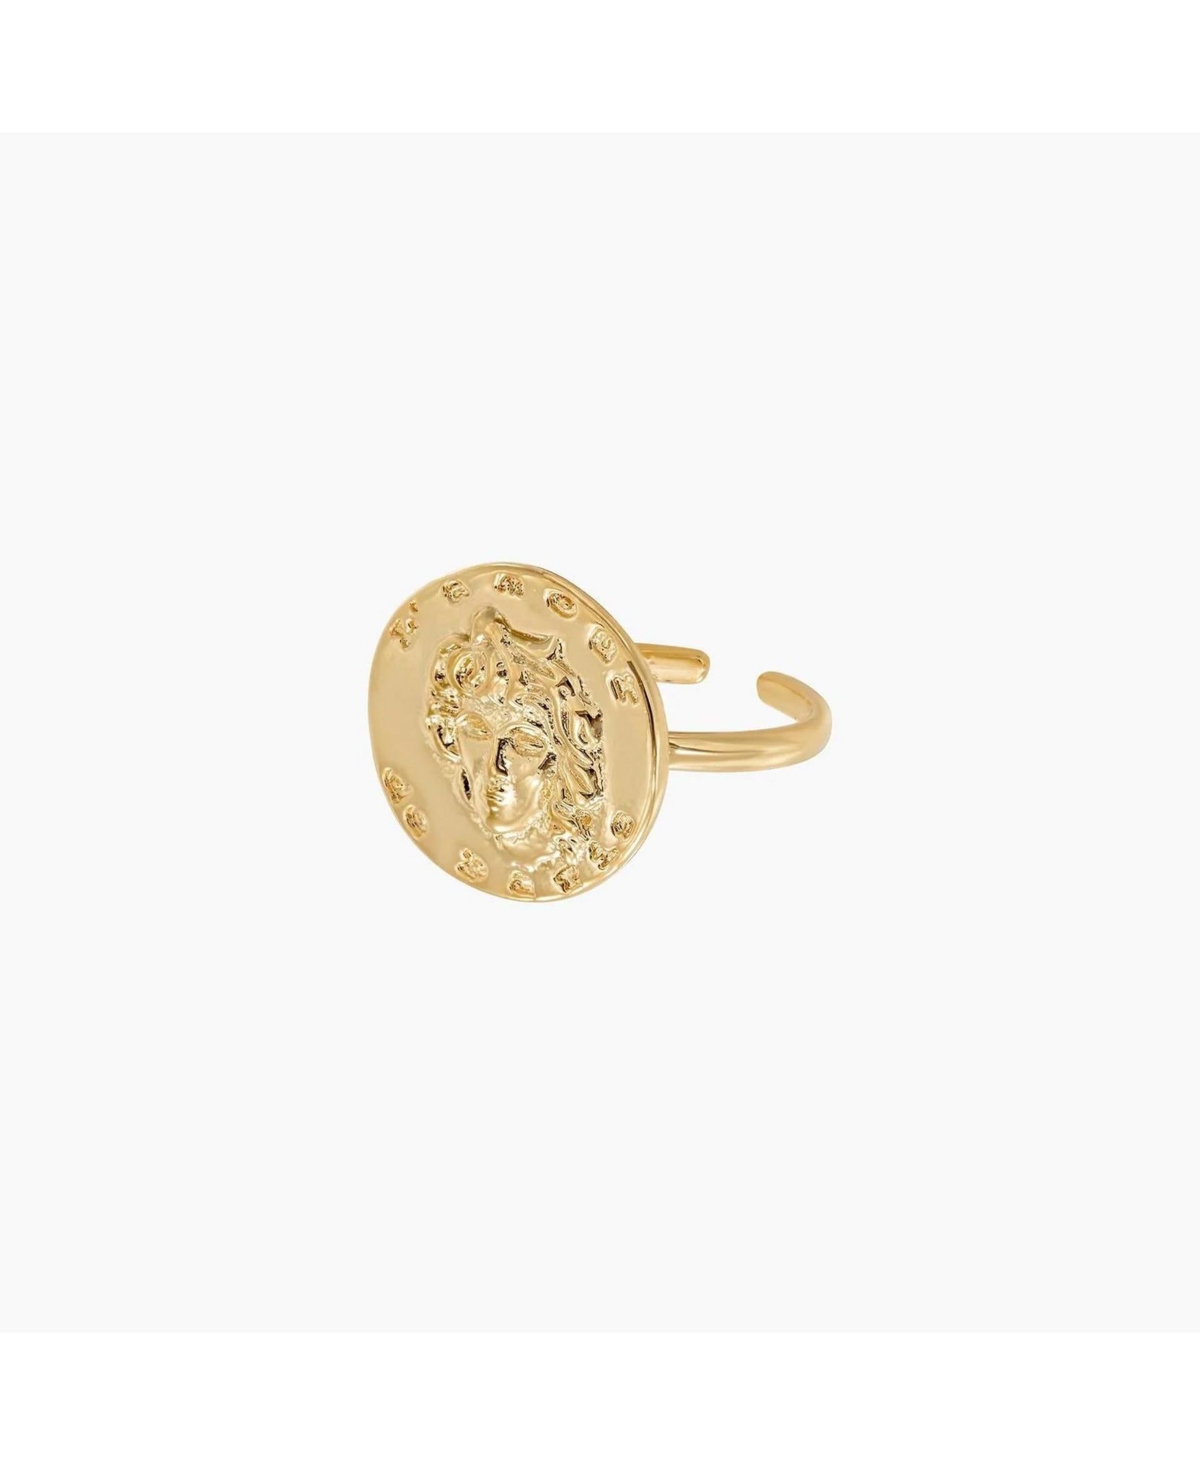 Maya Coin Adjustable Ring - Gold